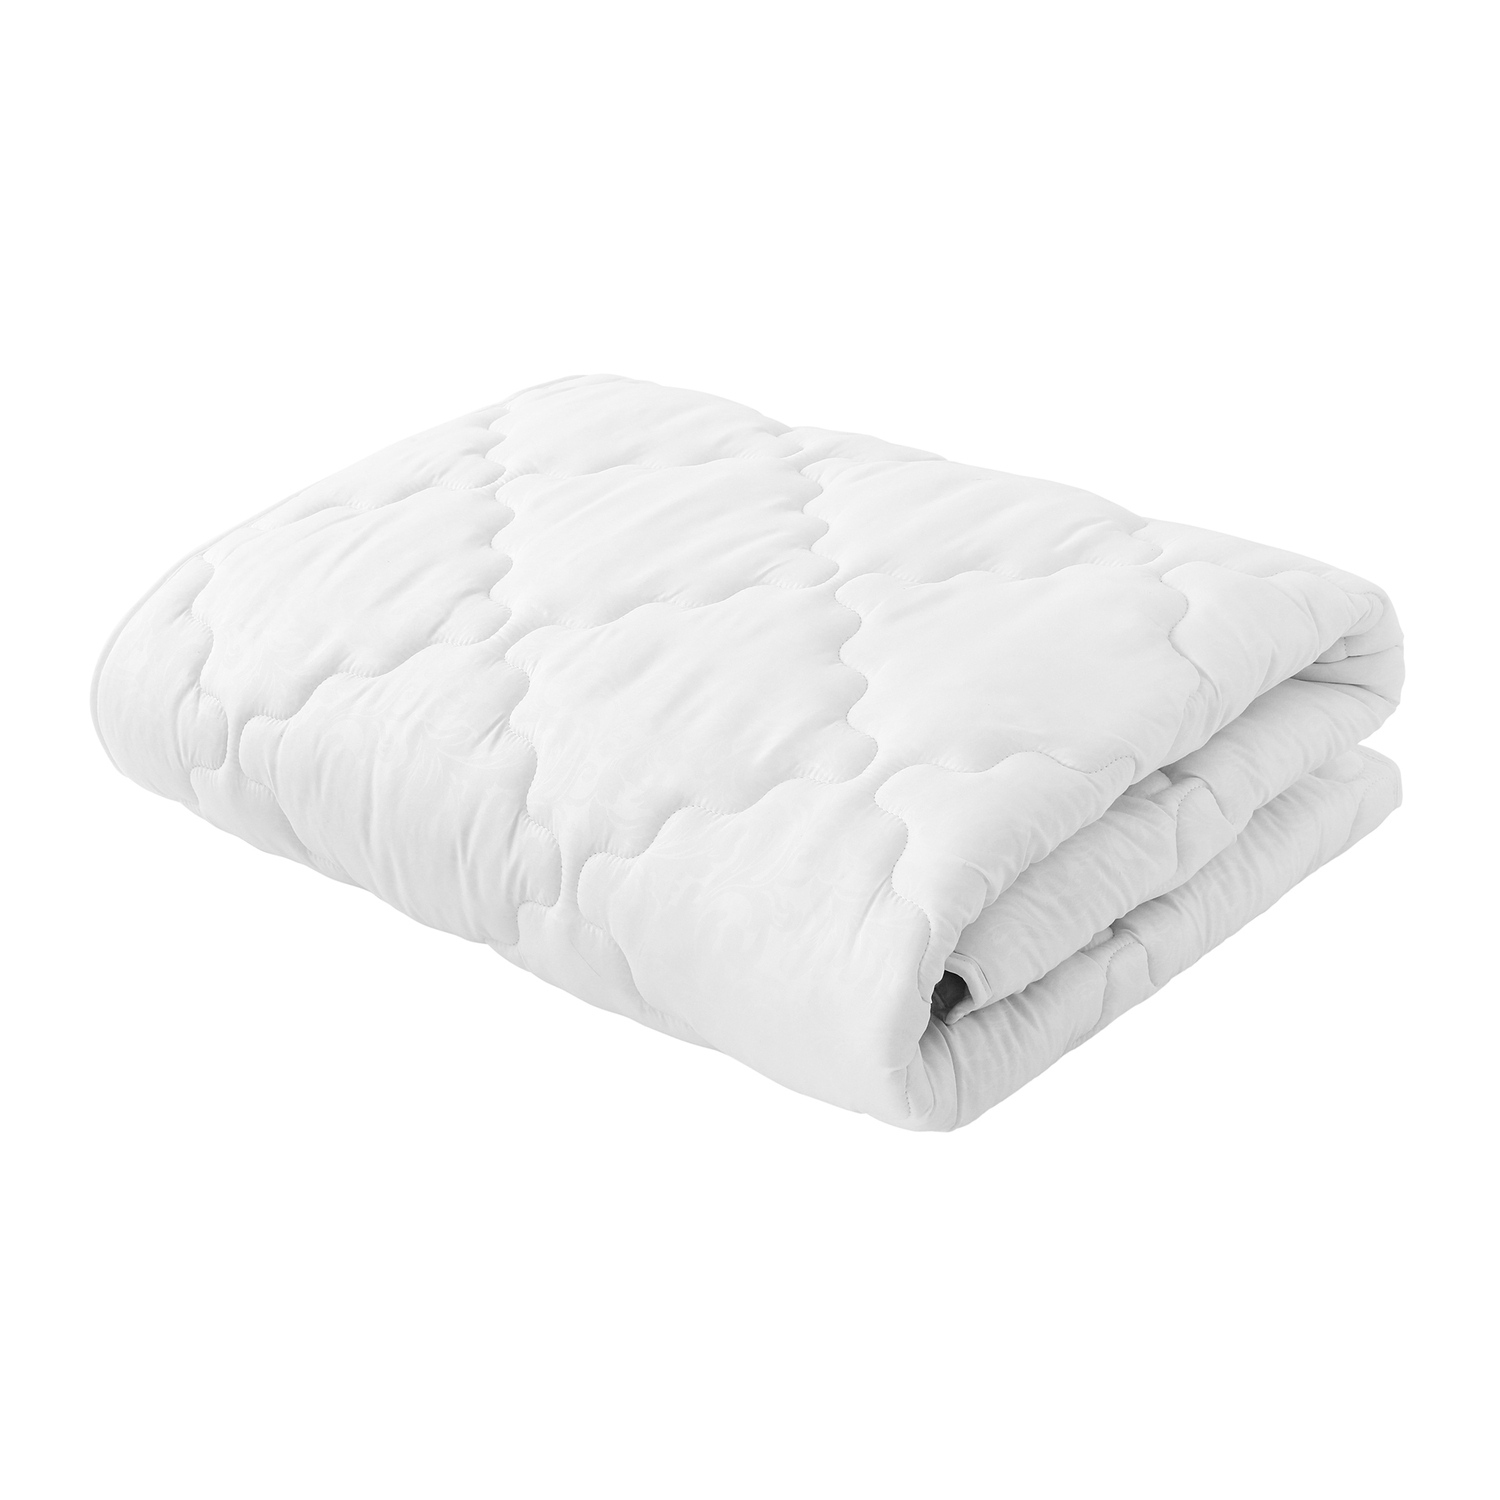 Одеяло Белая ветка (140х205 см), размер 140х205 см samo826549 Одеяло Белая ветка (140х205 см) - фото 1